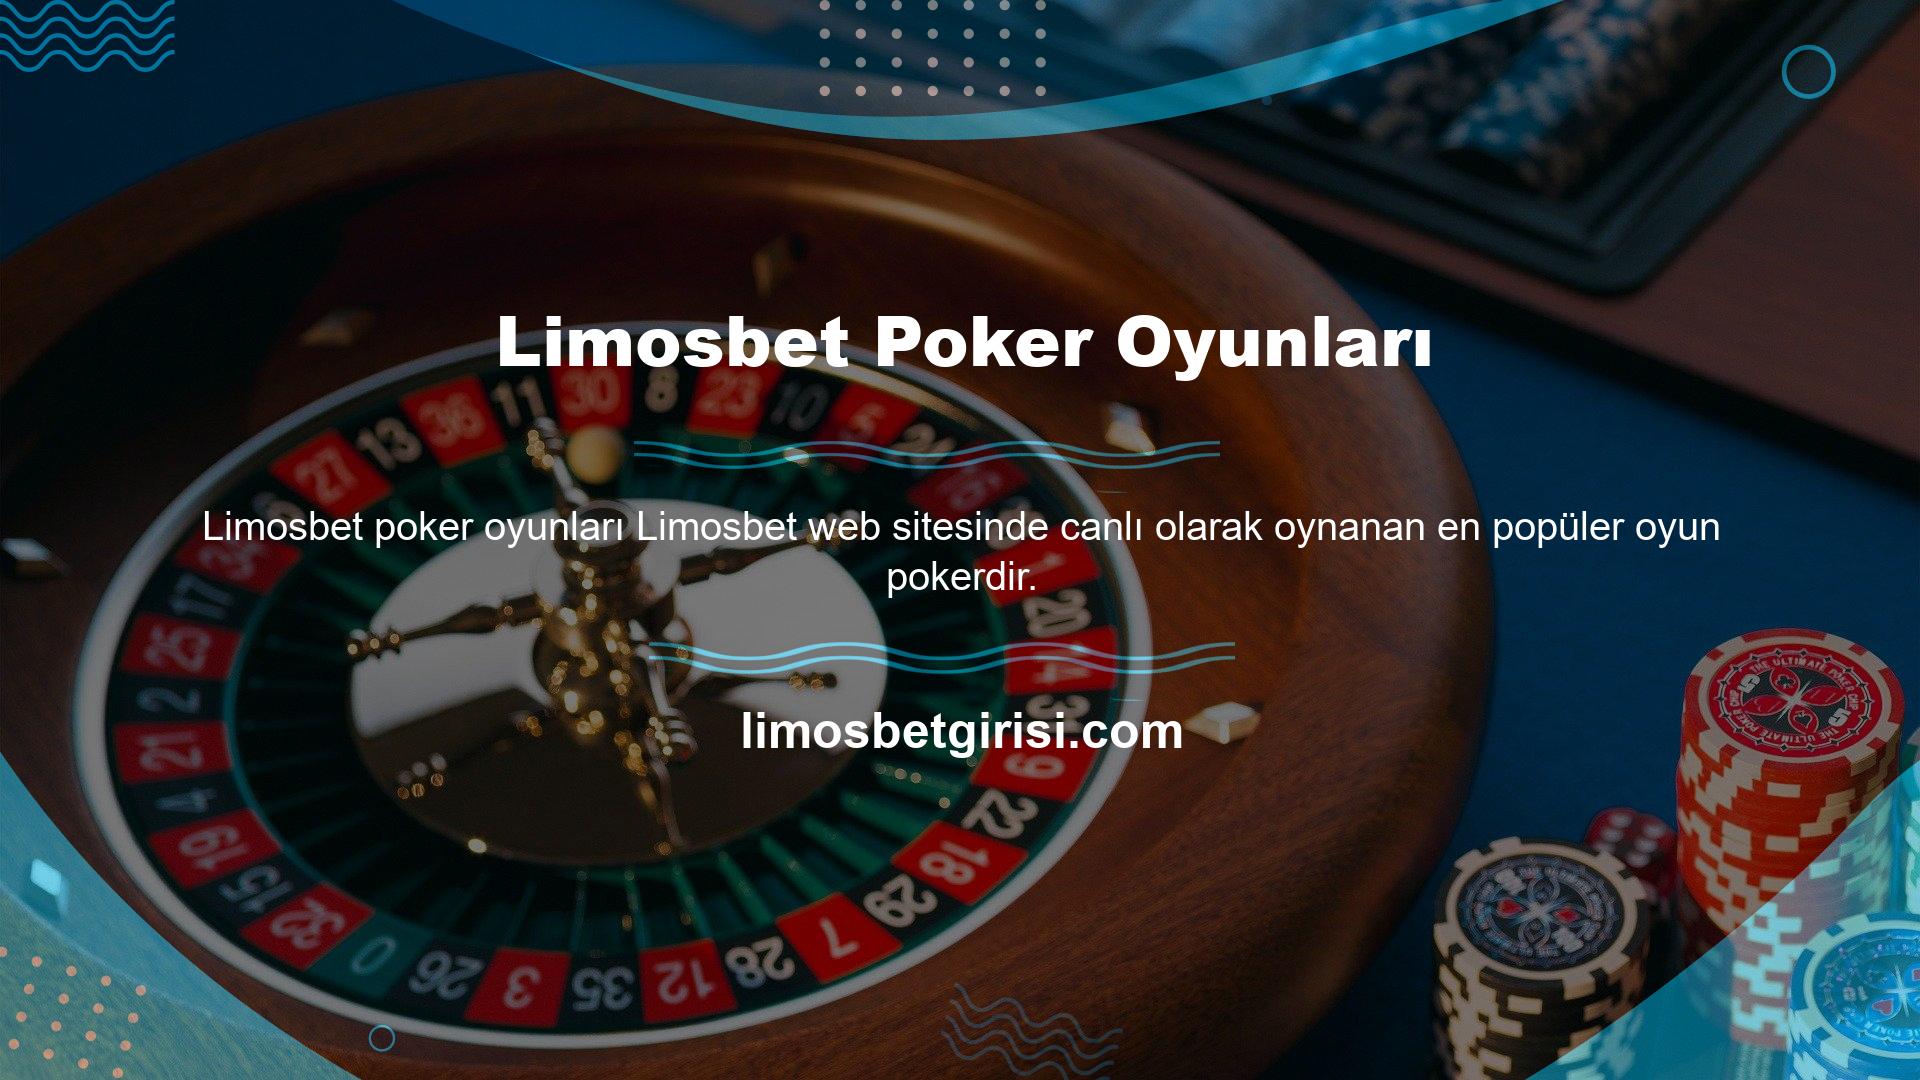 Limosbet sitesinde bir poker odası mevcuttur